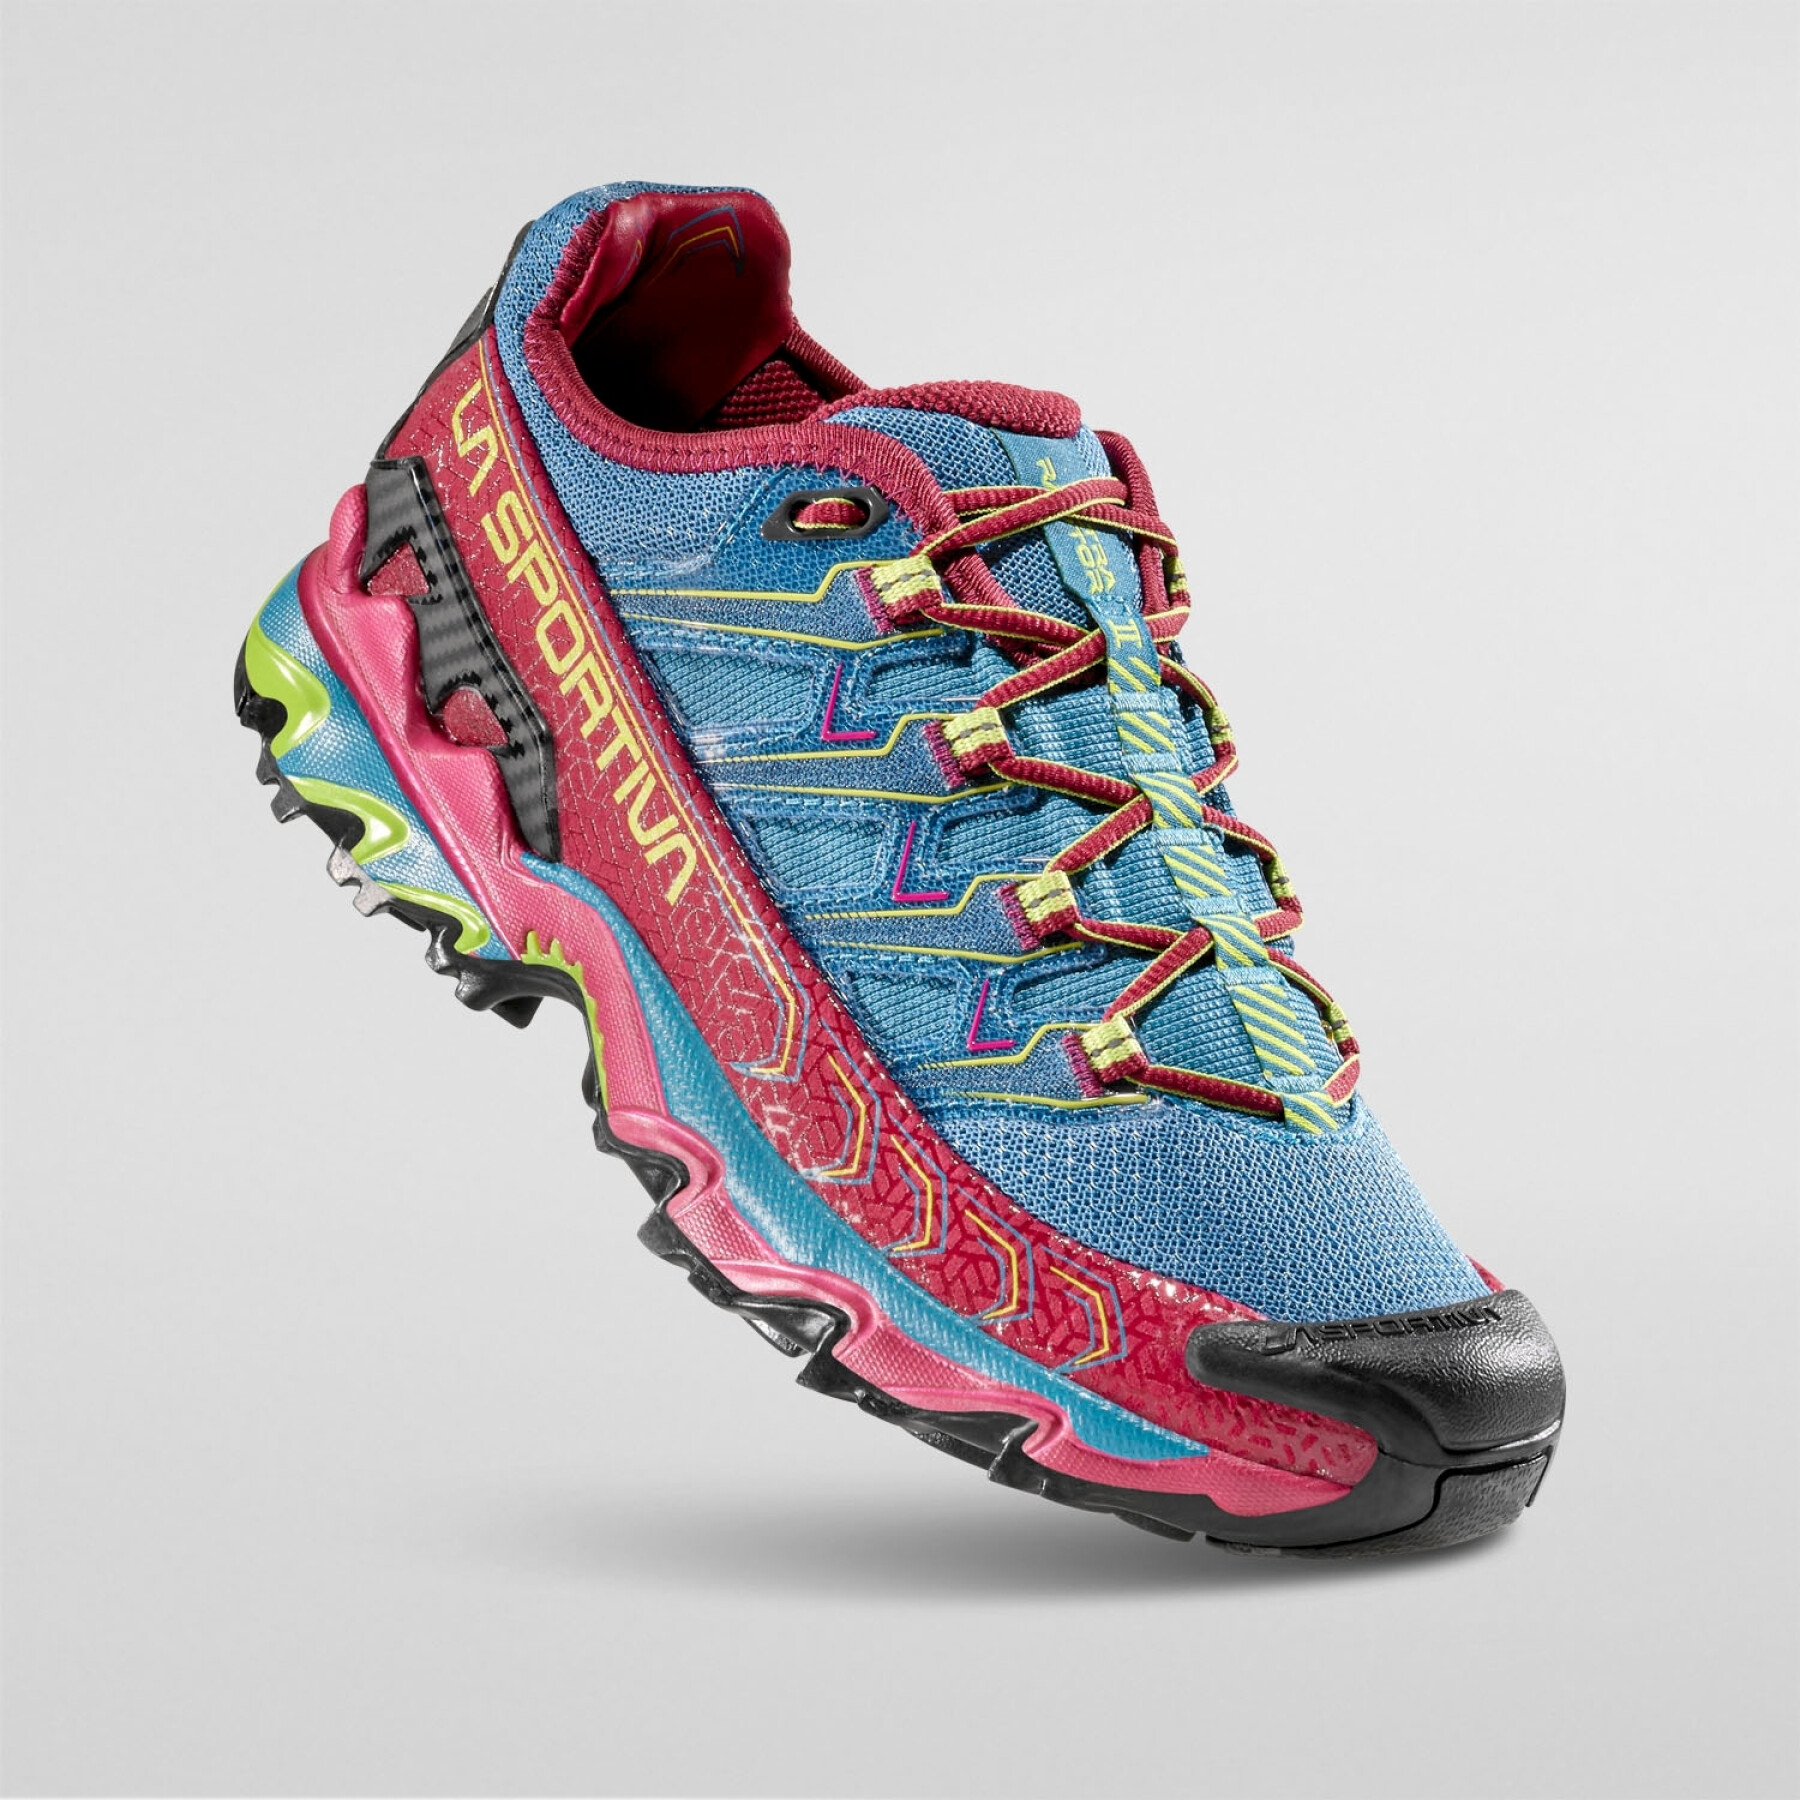 Women's trail shoes La Sportiva Ultra Raptor II